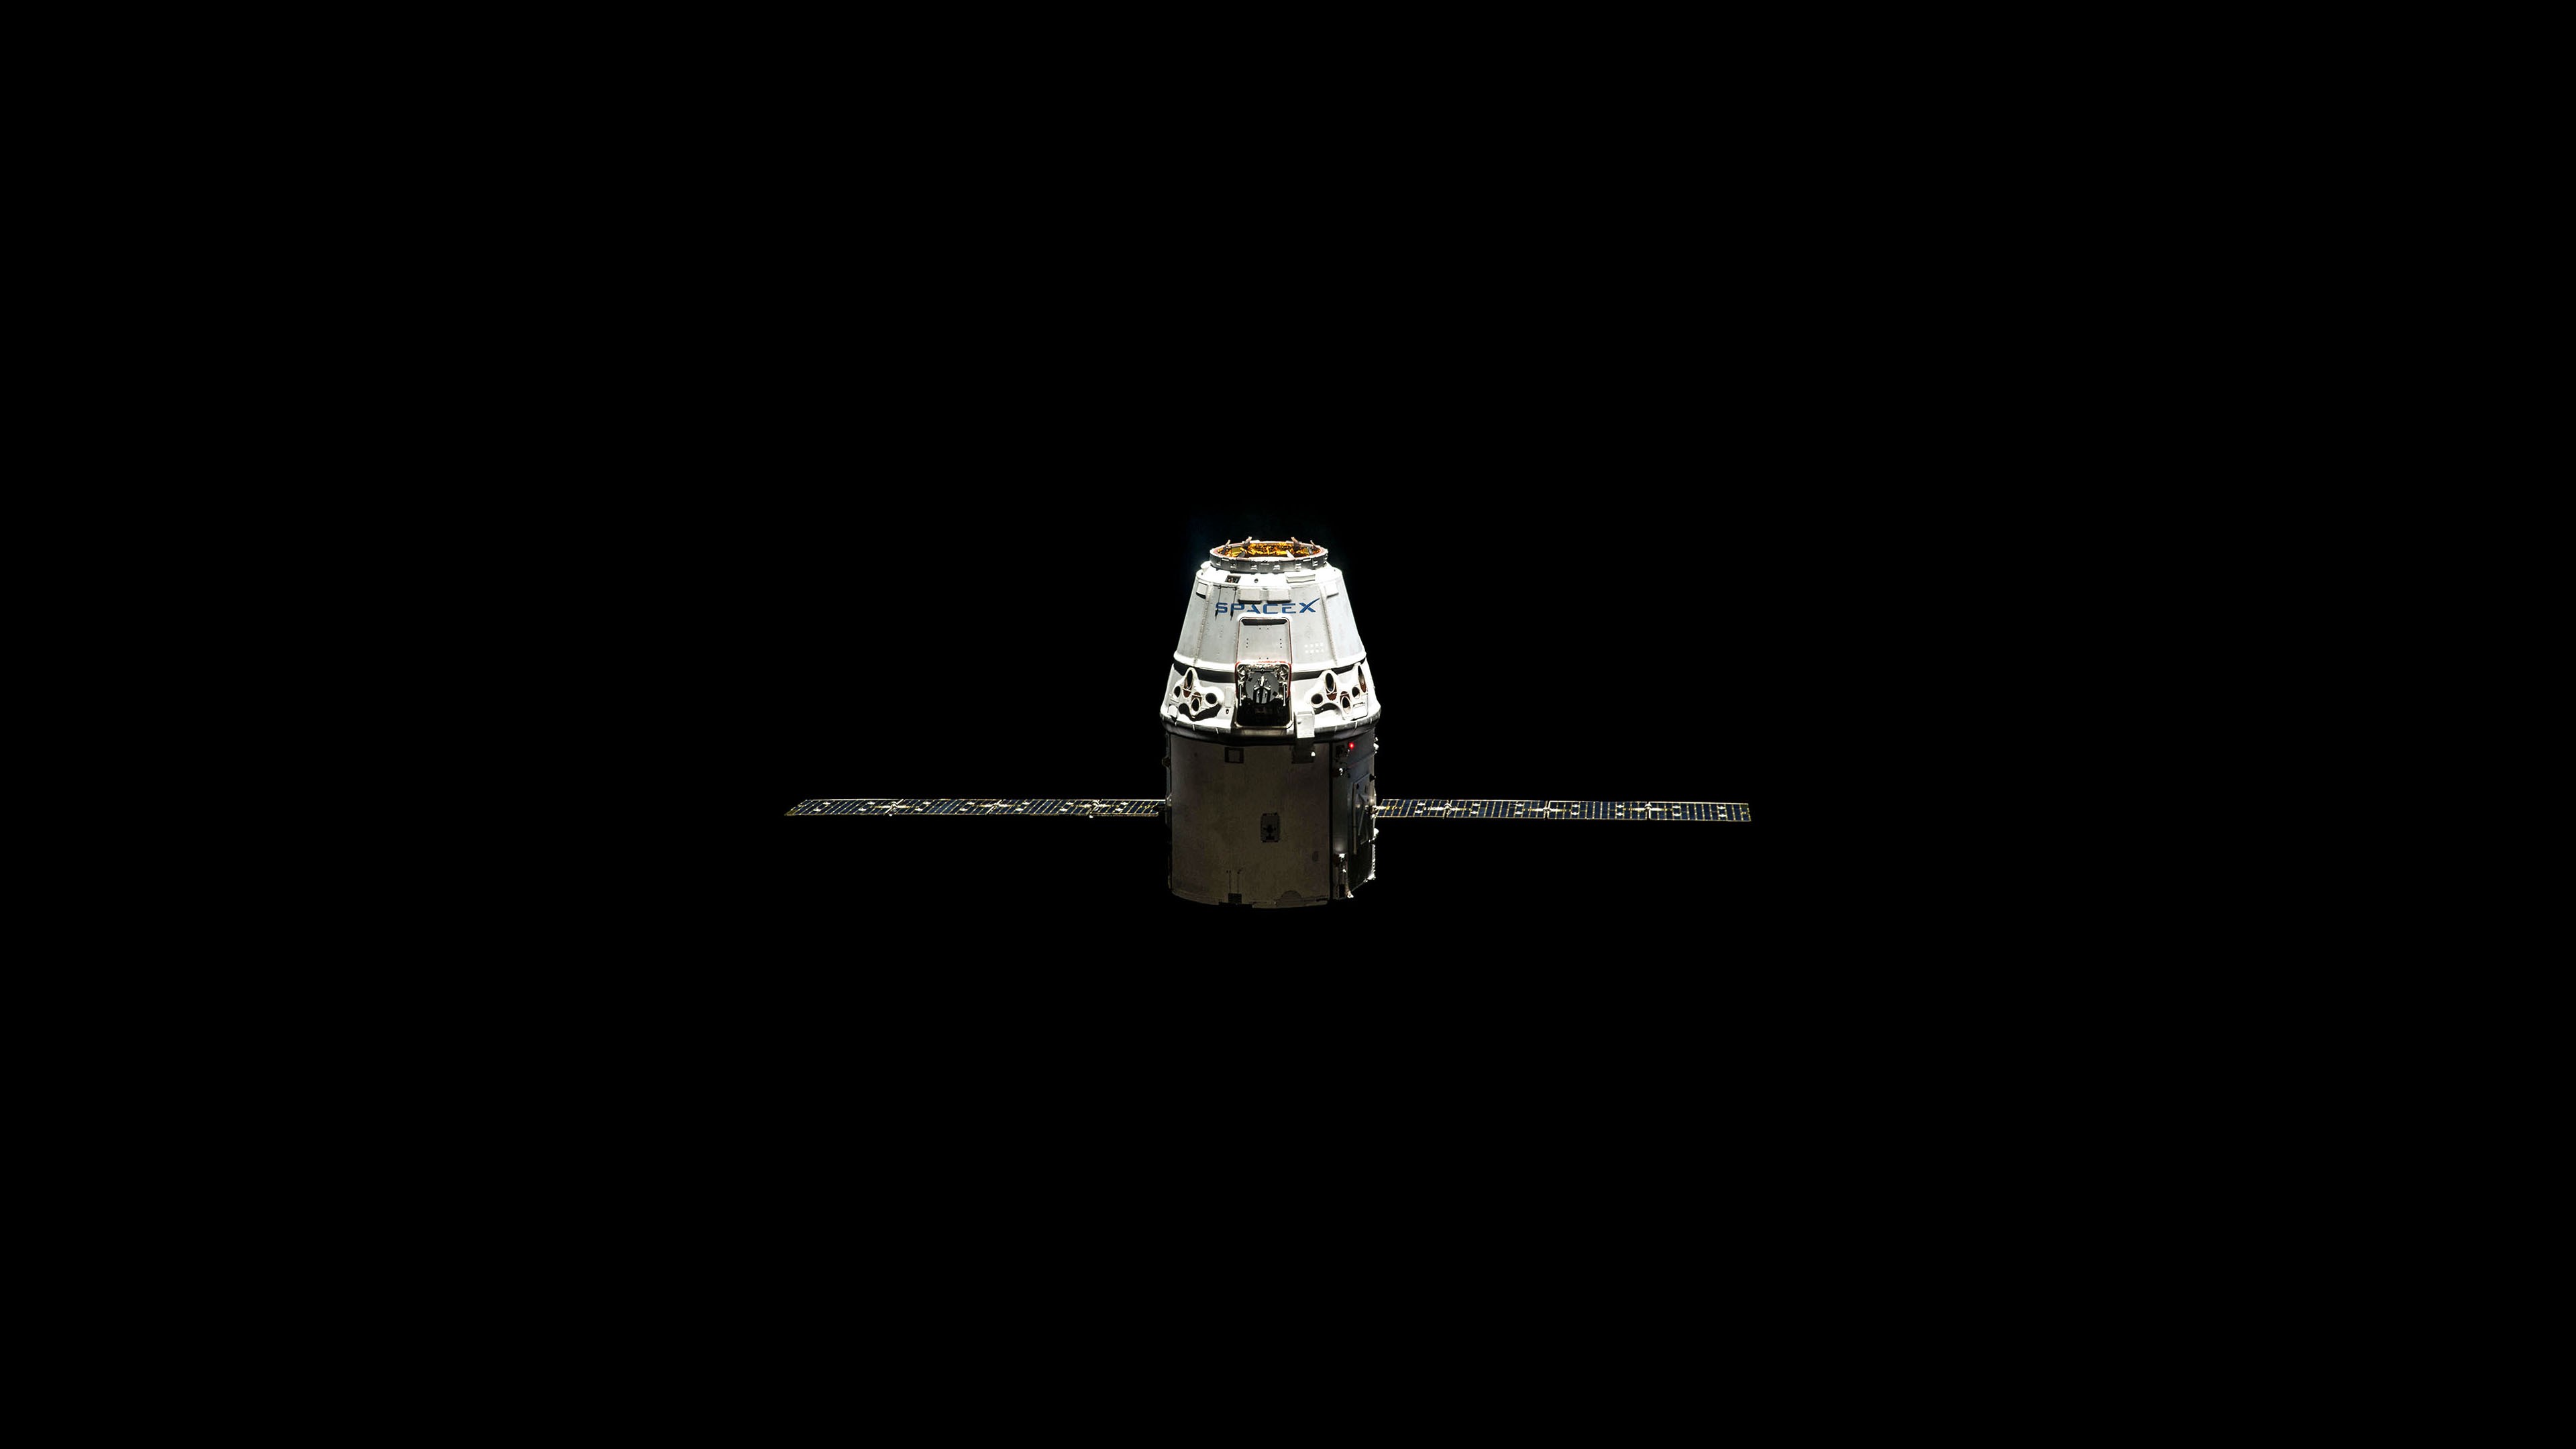 General 3840x2160 space SpaceX minimalism satellite black background